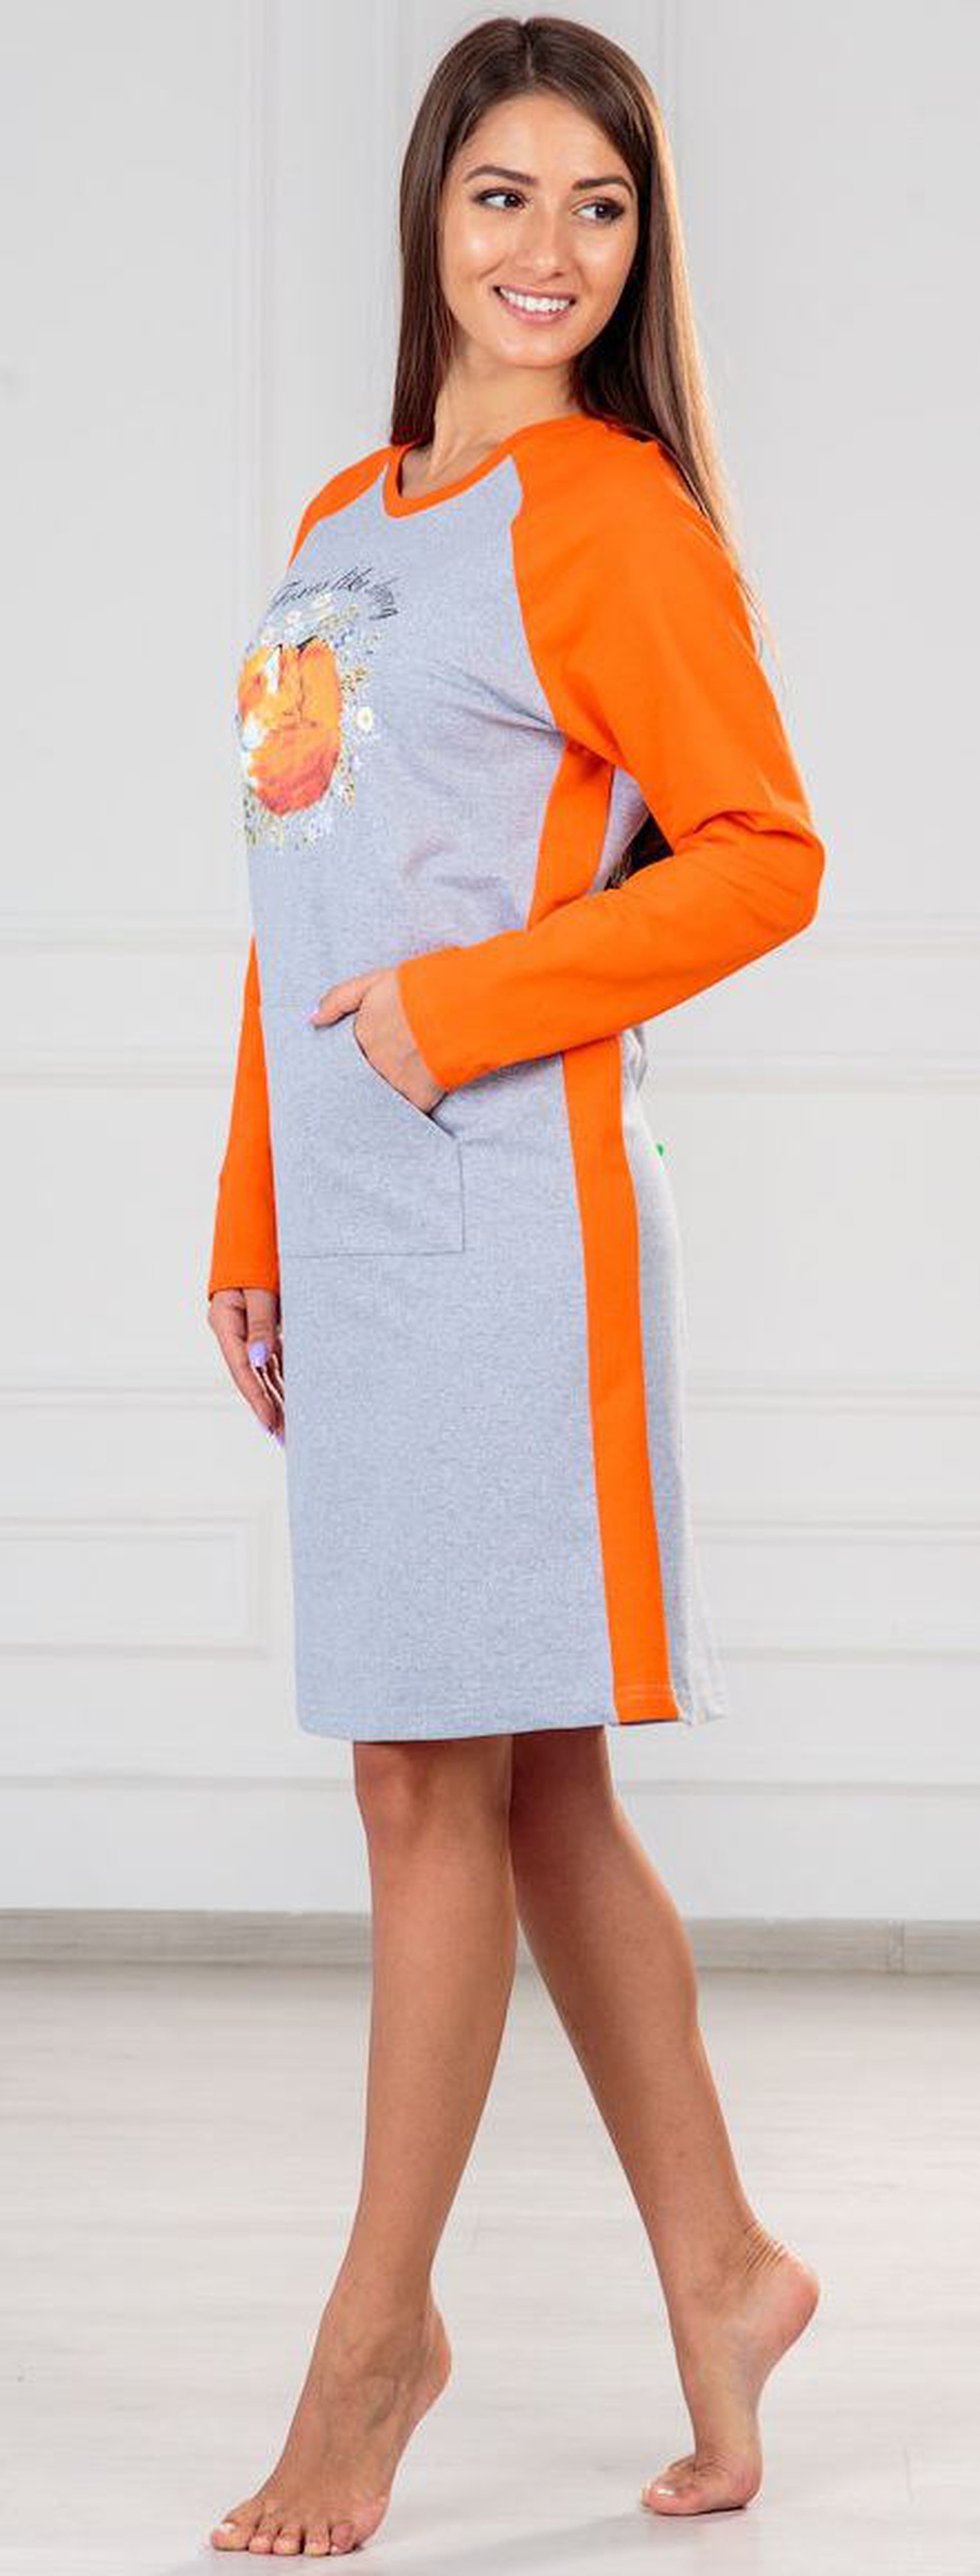 Платье ModaRU Лиса (52) оранжевый/серый меланж фото